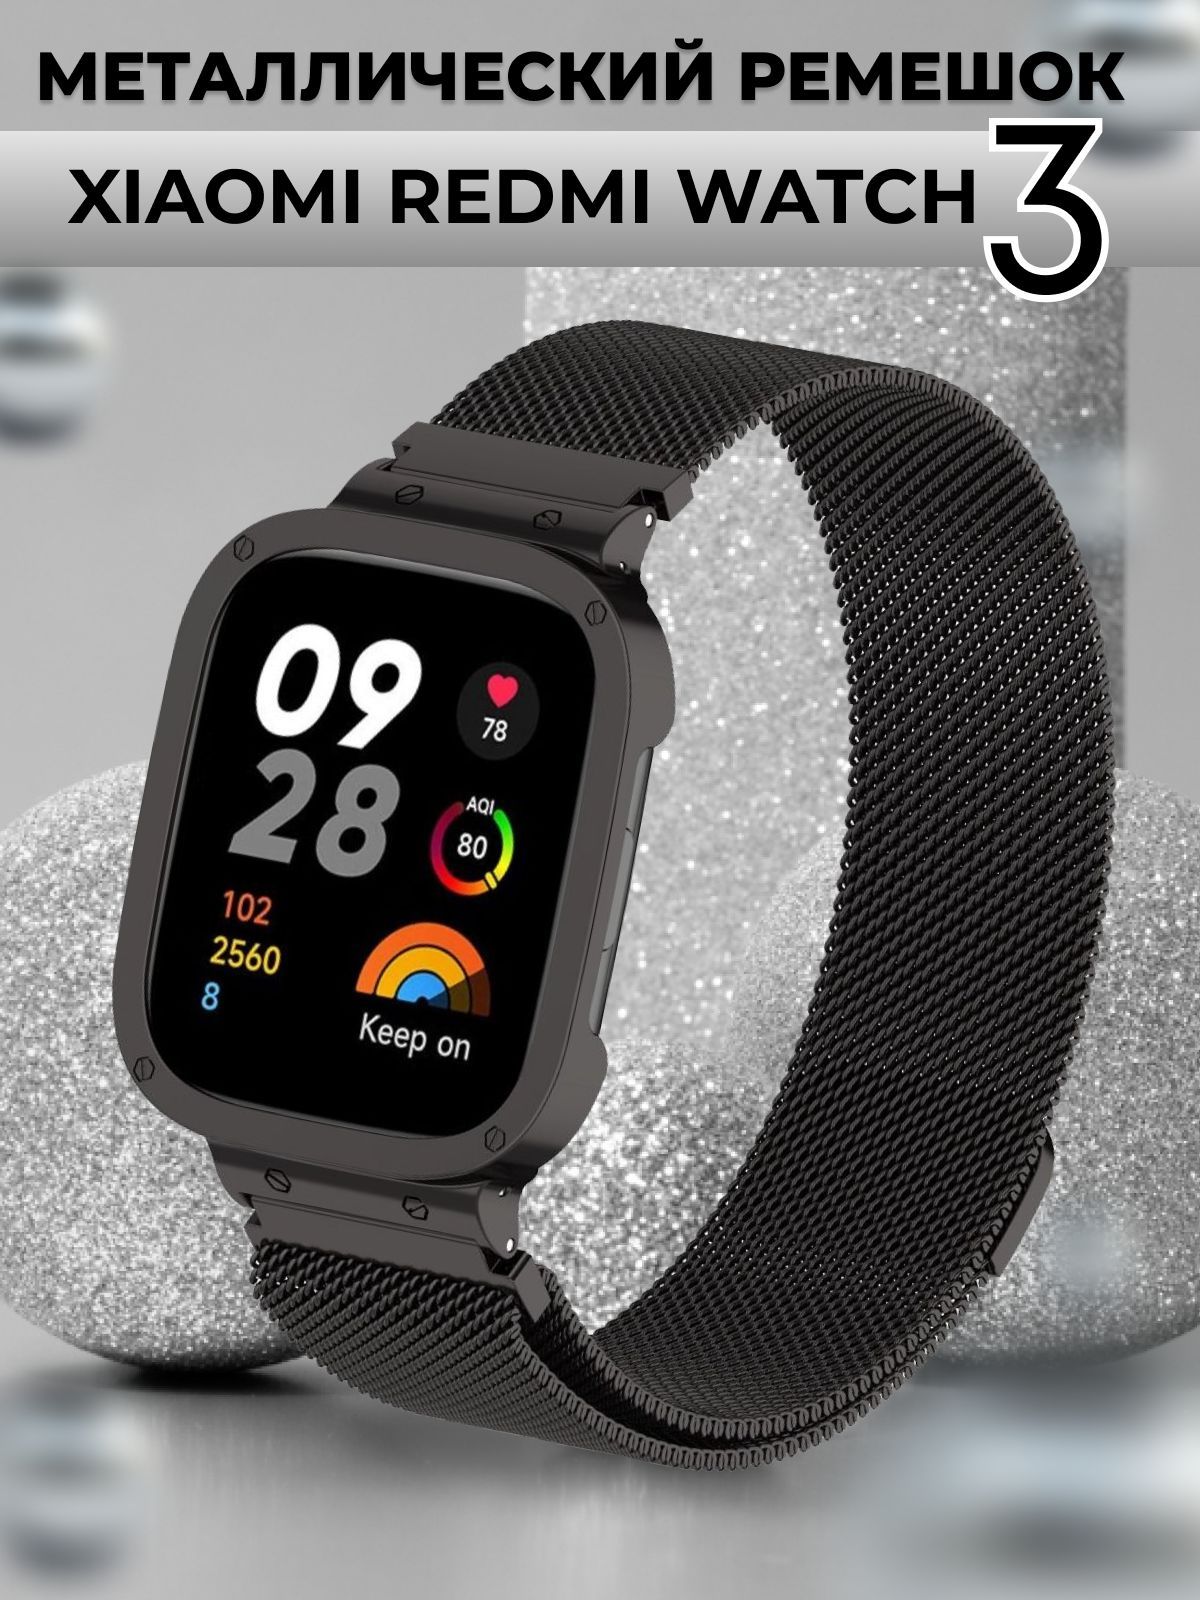 Ремешок на редми вотч 3. Часы Redmi watch 3. Ремешки для Redmi watch 4. Красивый ремешок на Redmi watch 3. Ремешок для redmi watch 3